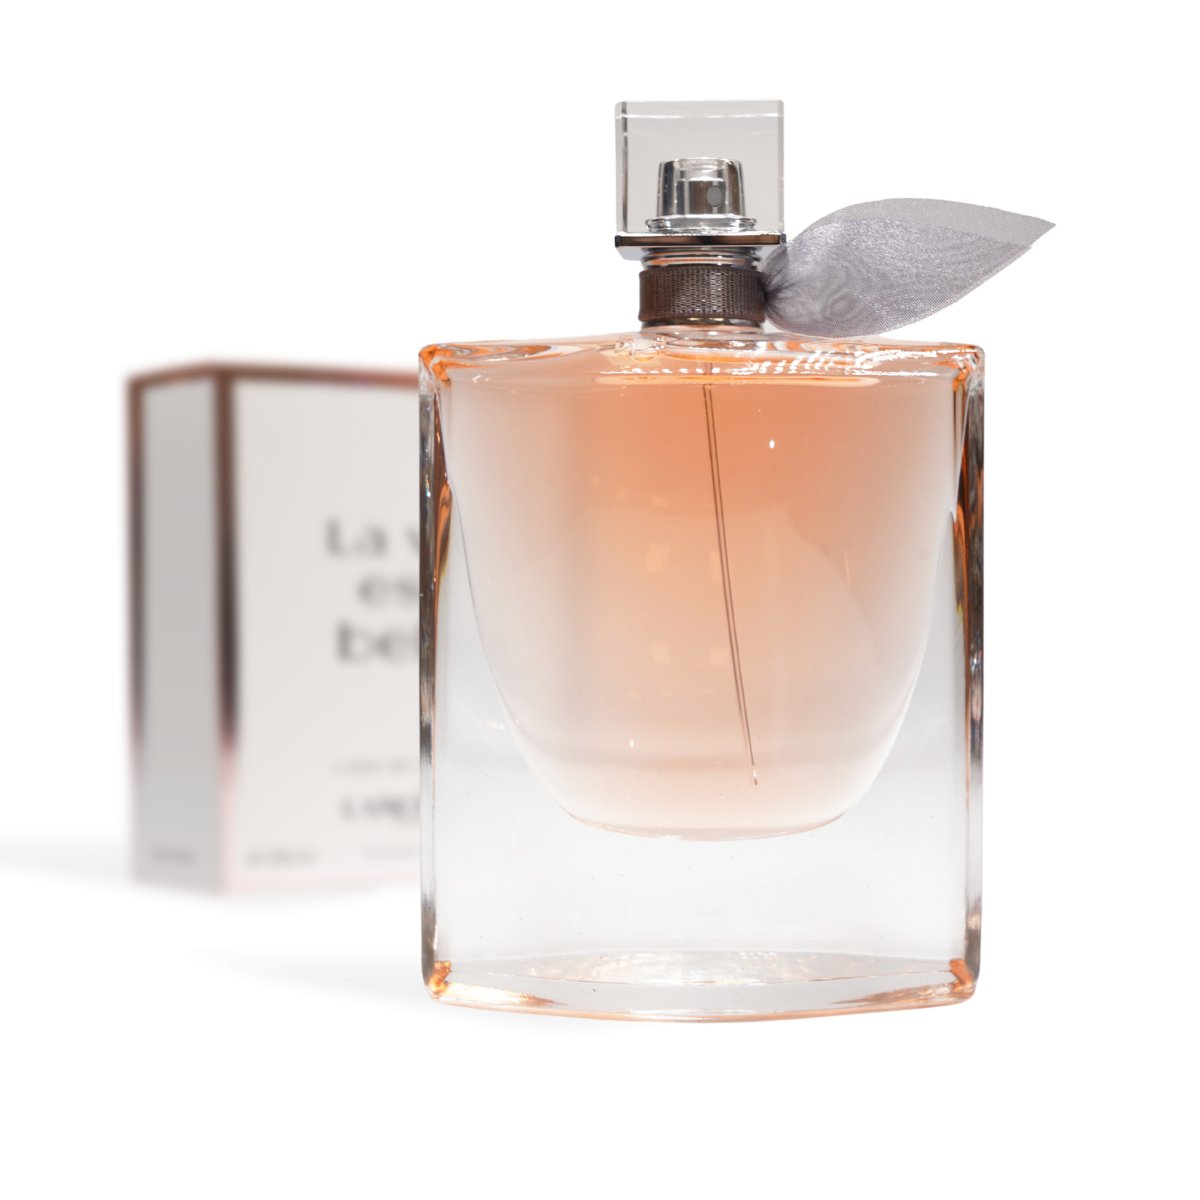 Lancôme La Vie Est Belle Eau de Parfum 3.4 oz - Lancome - 3.4 oz - Eau de Parfum - Fragrance - 3605533286555 - Fragrance